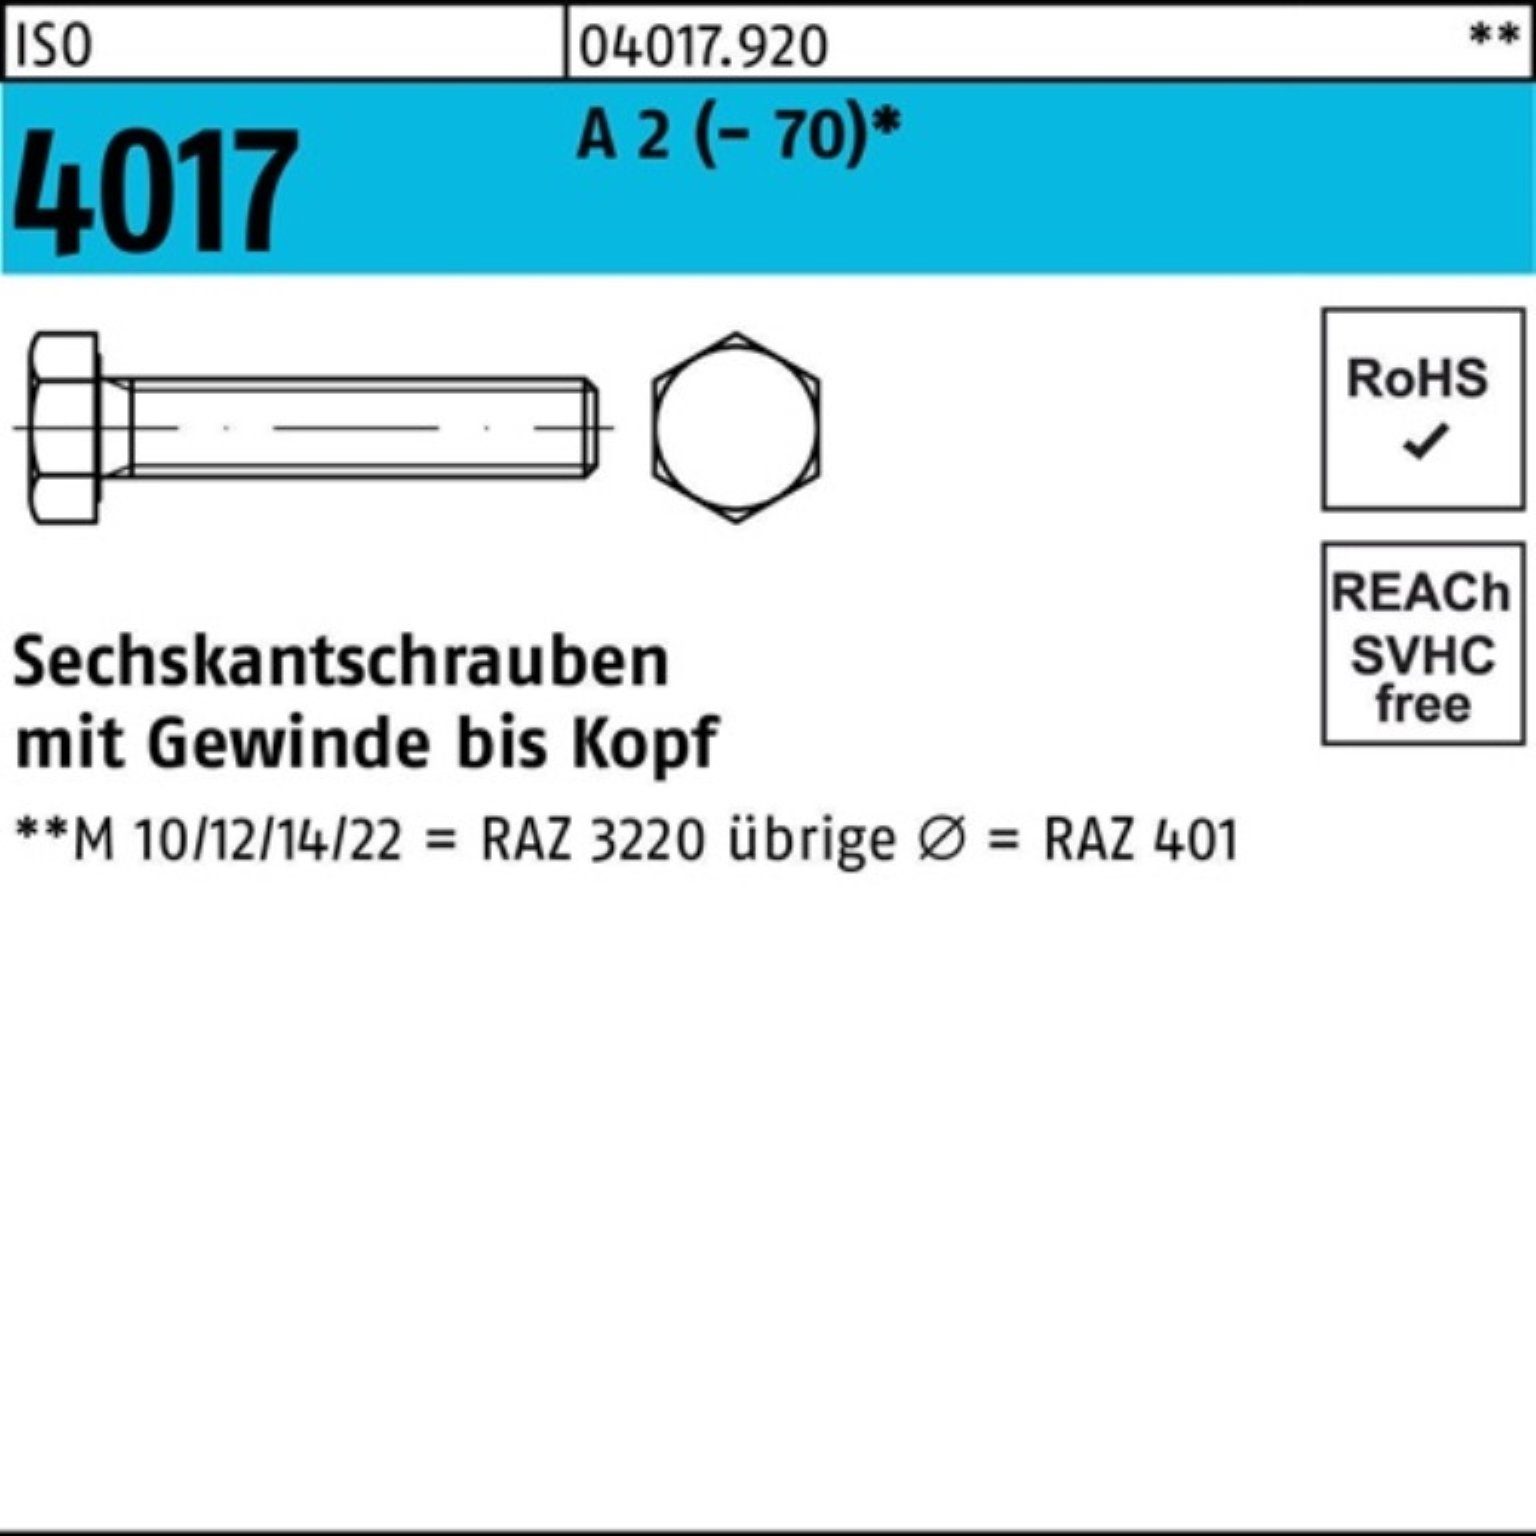 Bufab Sechskantschraube 100er Pack Sechskantschraube ISO 4017 VG M8x 80 A 2 (70) 50 Stück I